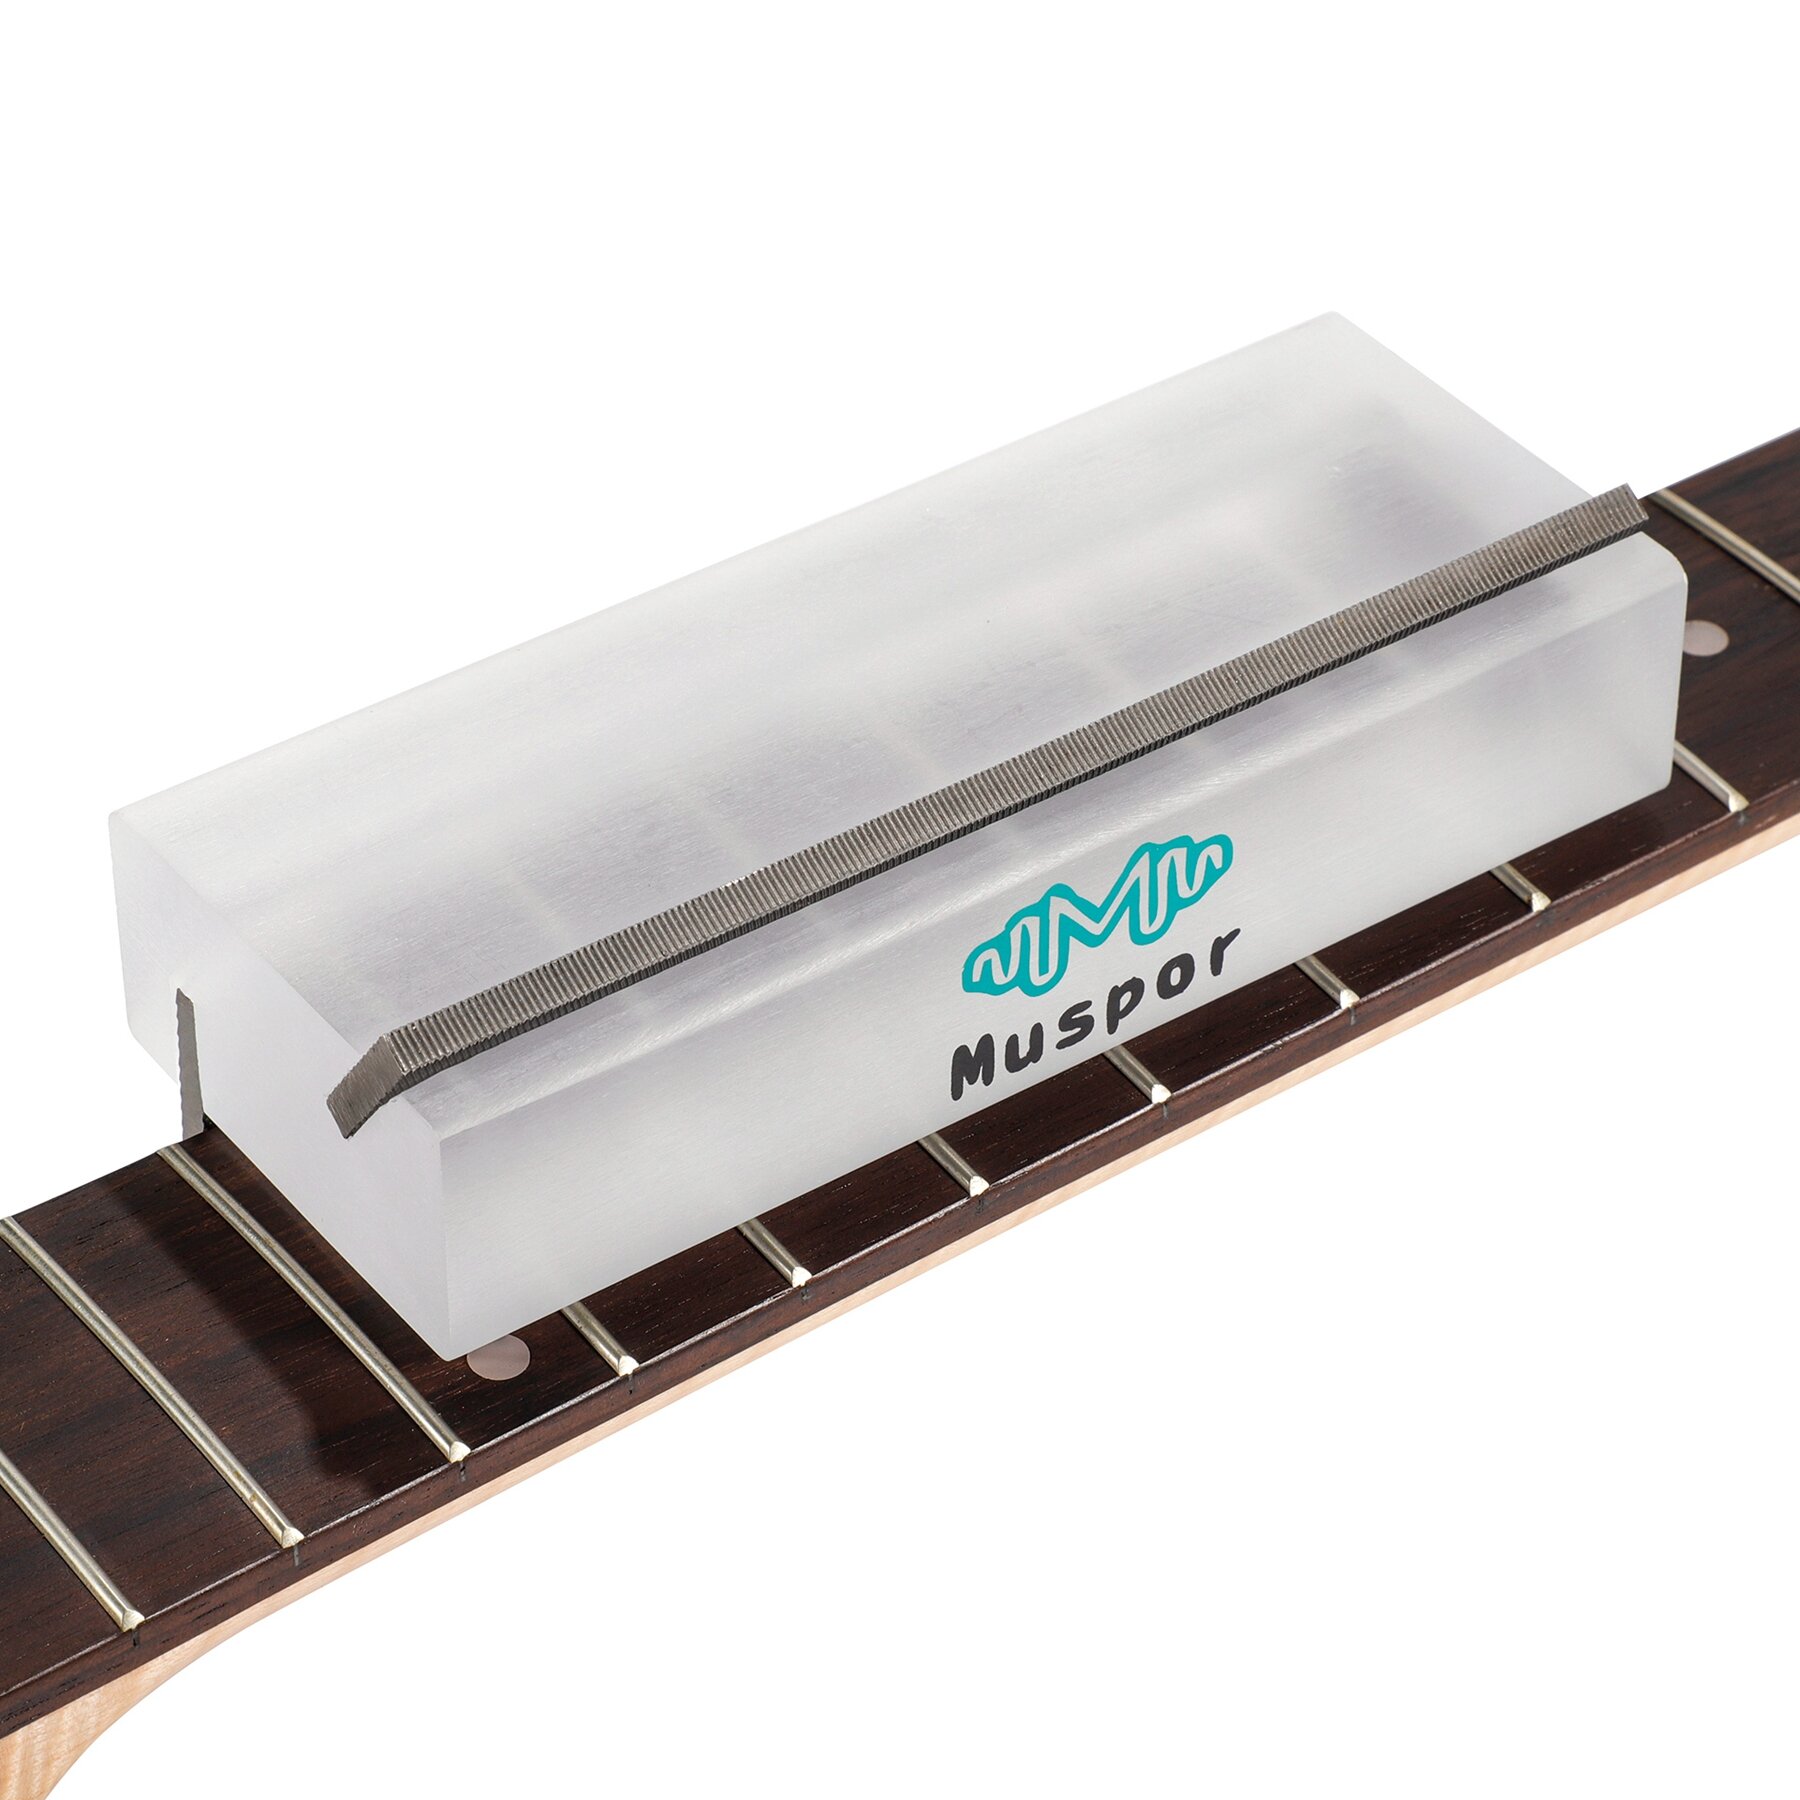 

Muspor 2 in 1 35° and 90° Guitar Fret Bevel File Guitar Repair Tools for Guitar Accessories